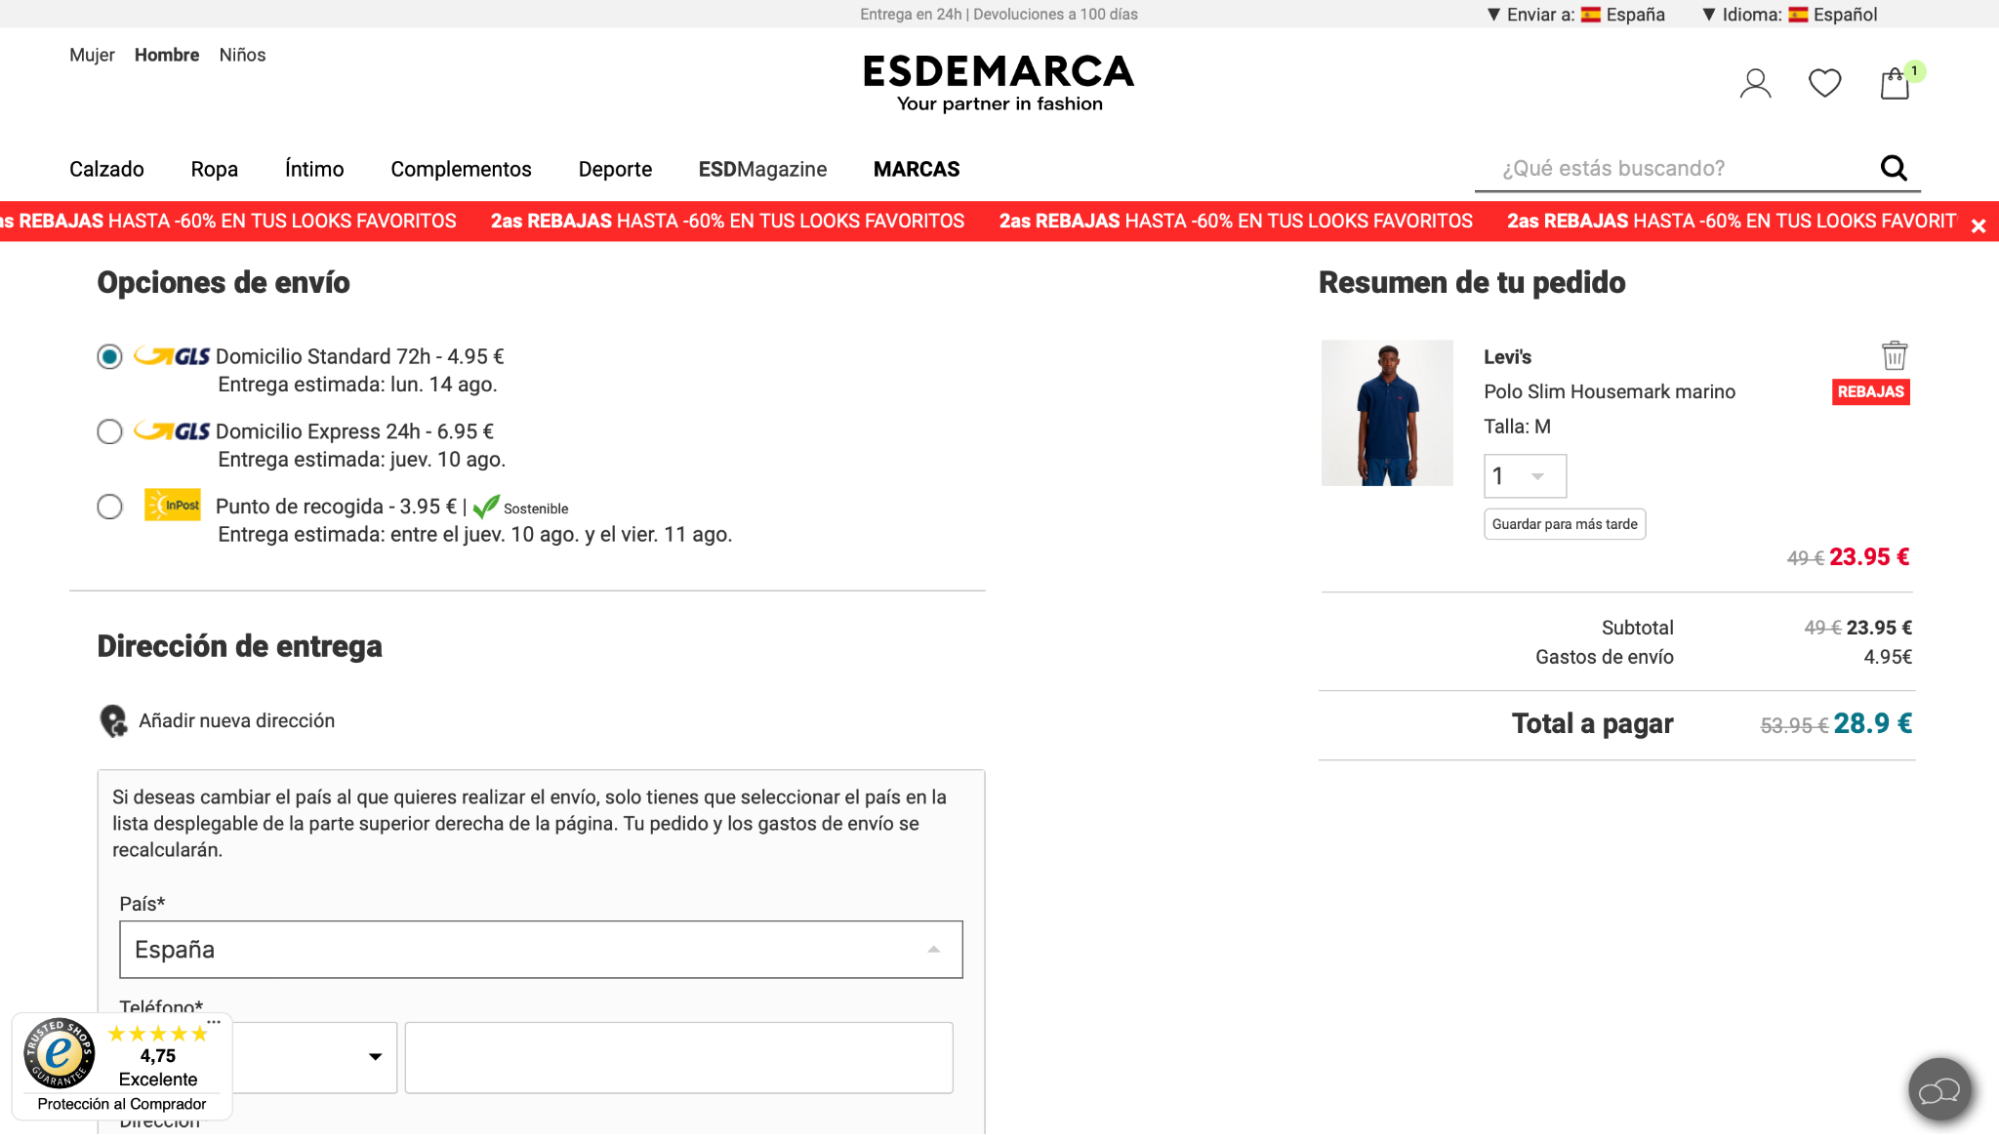 Imagen 9: Usar código promocional en Esdemarca